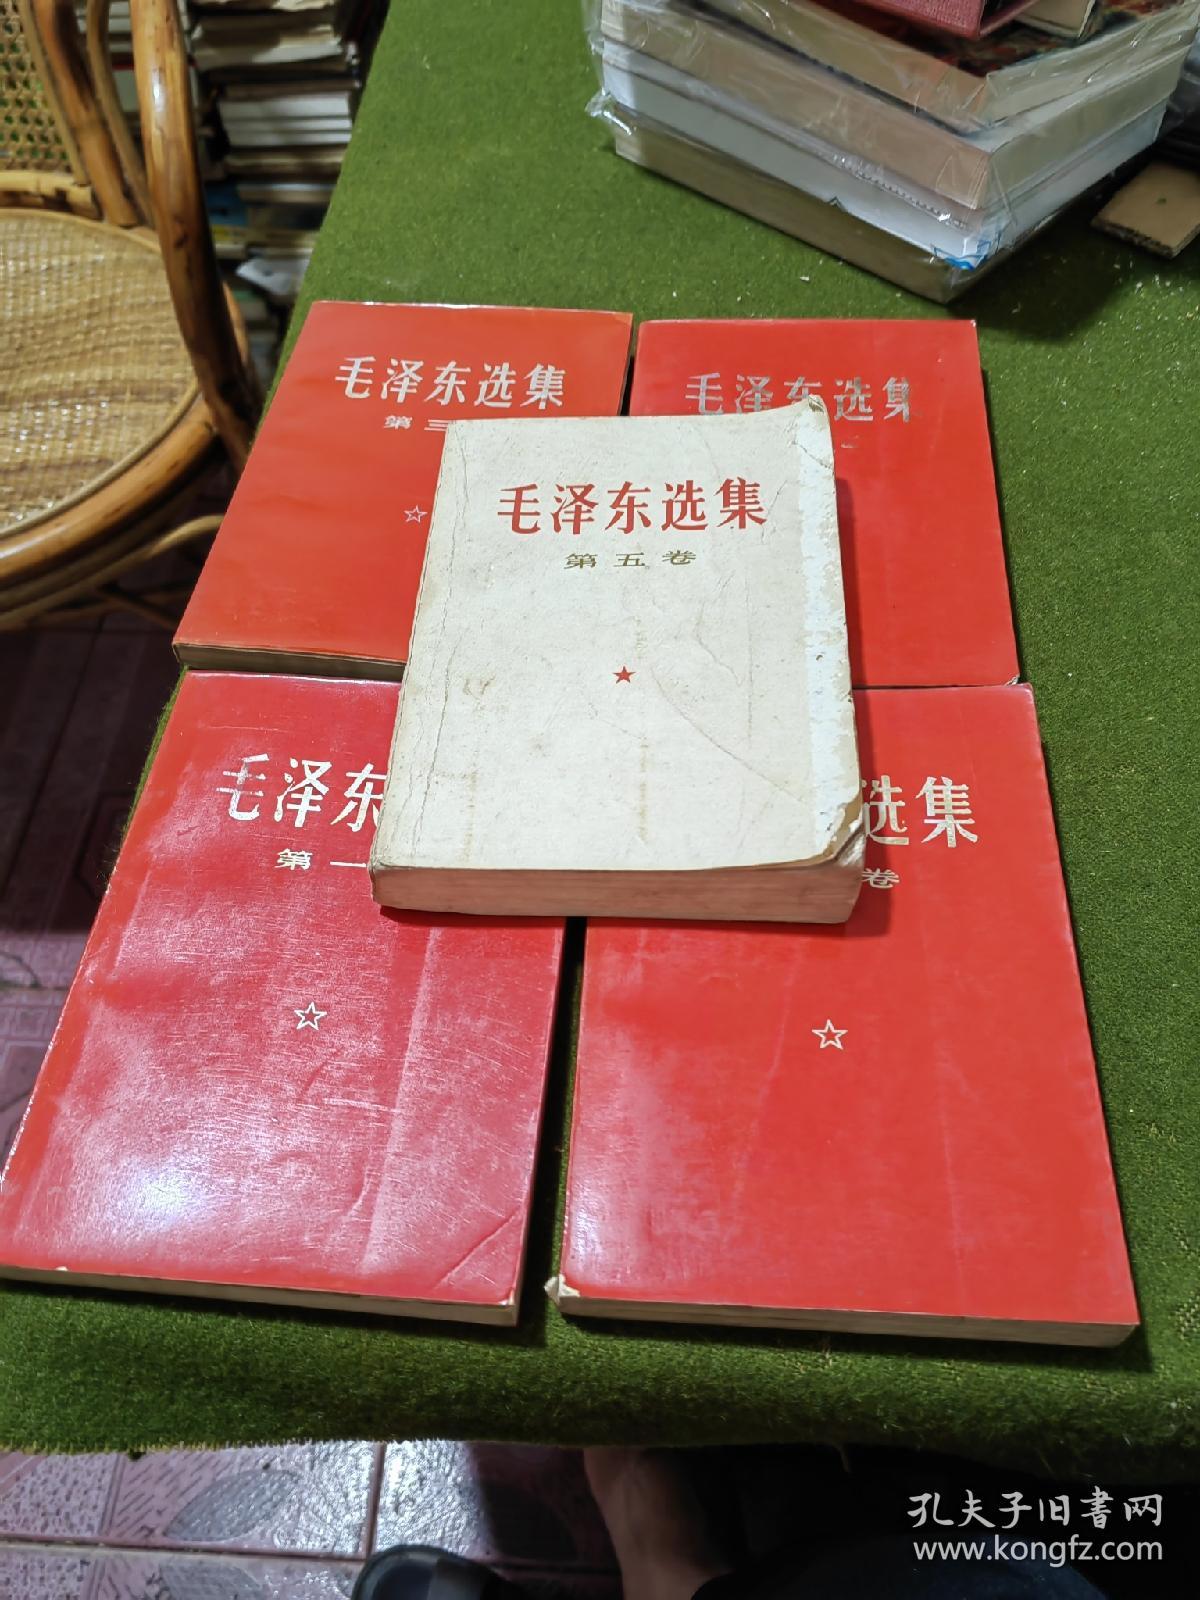 毛泽东选集（1-5卷）红皮